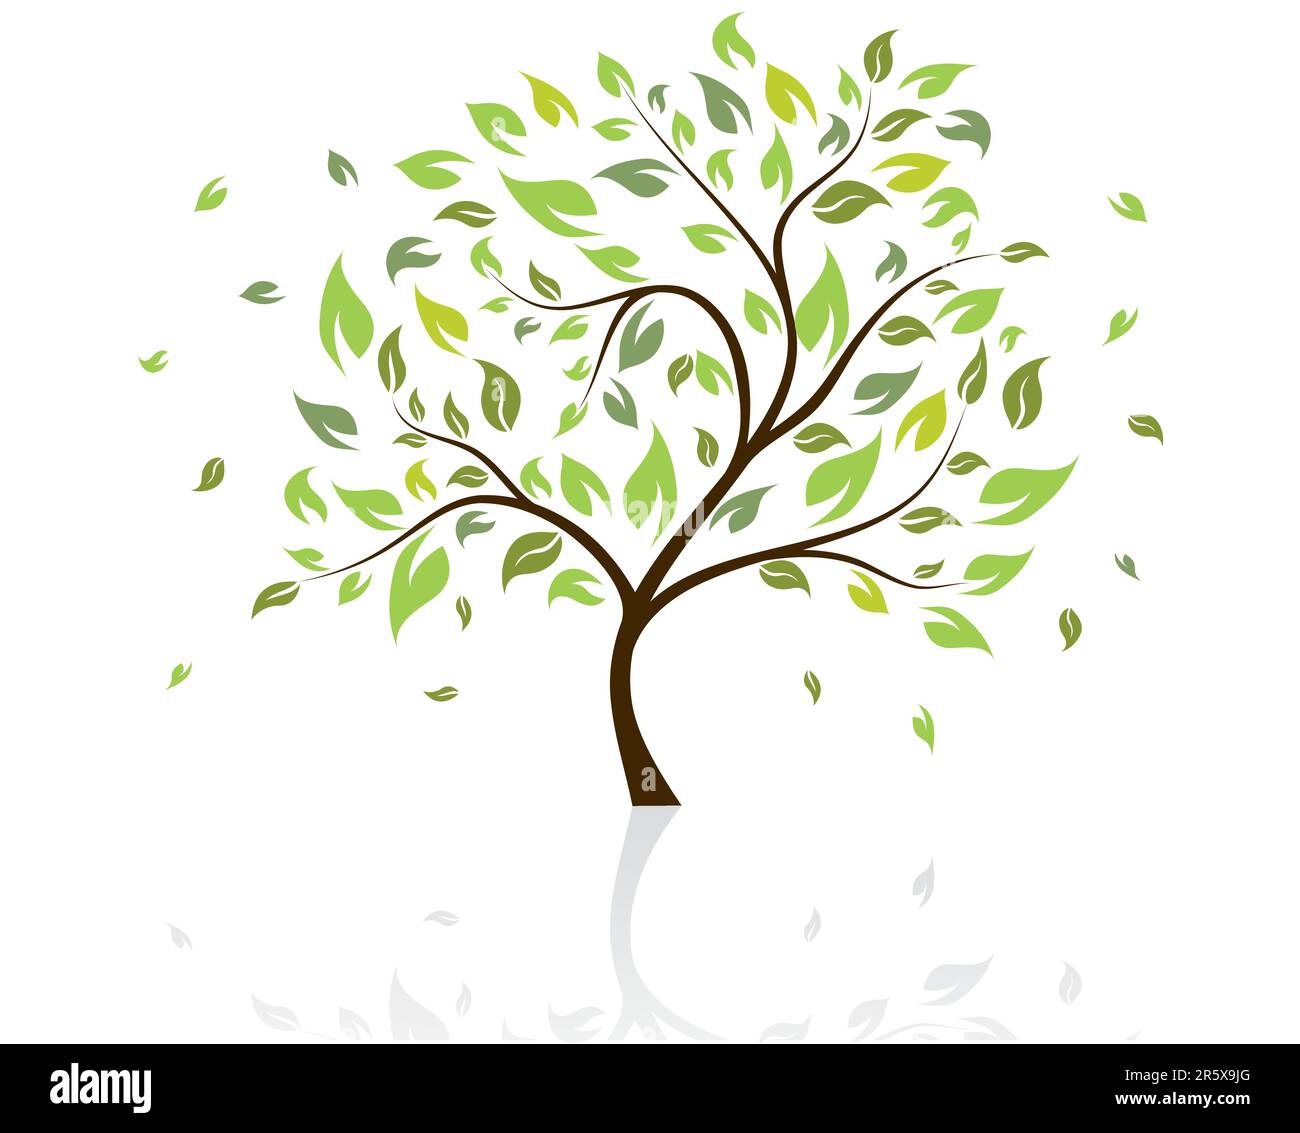 Vektor-Illustration der Baum mit fallenden Blätter Stock Vektor